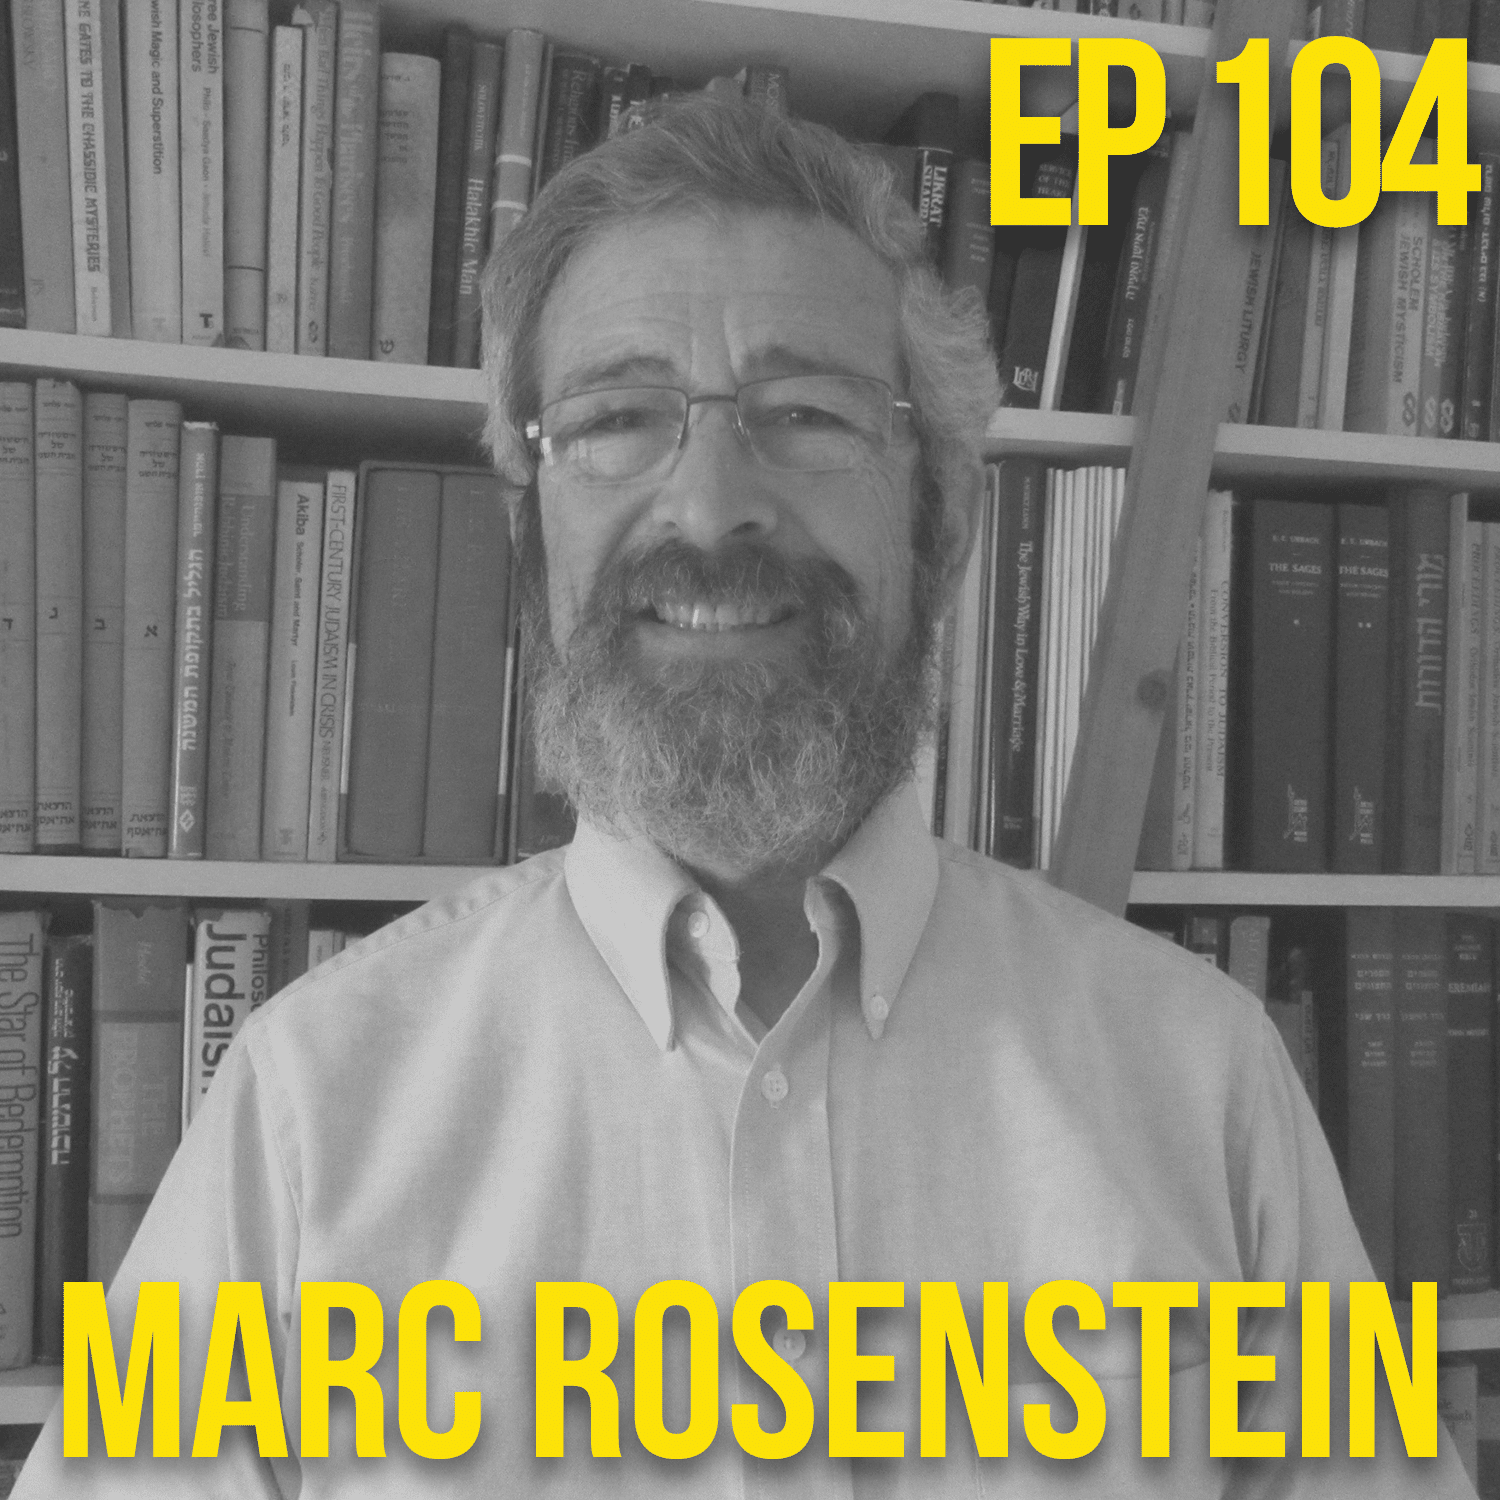 Marc Rosenstein